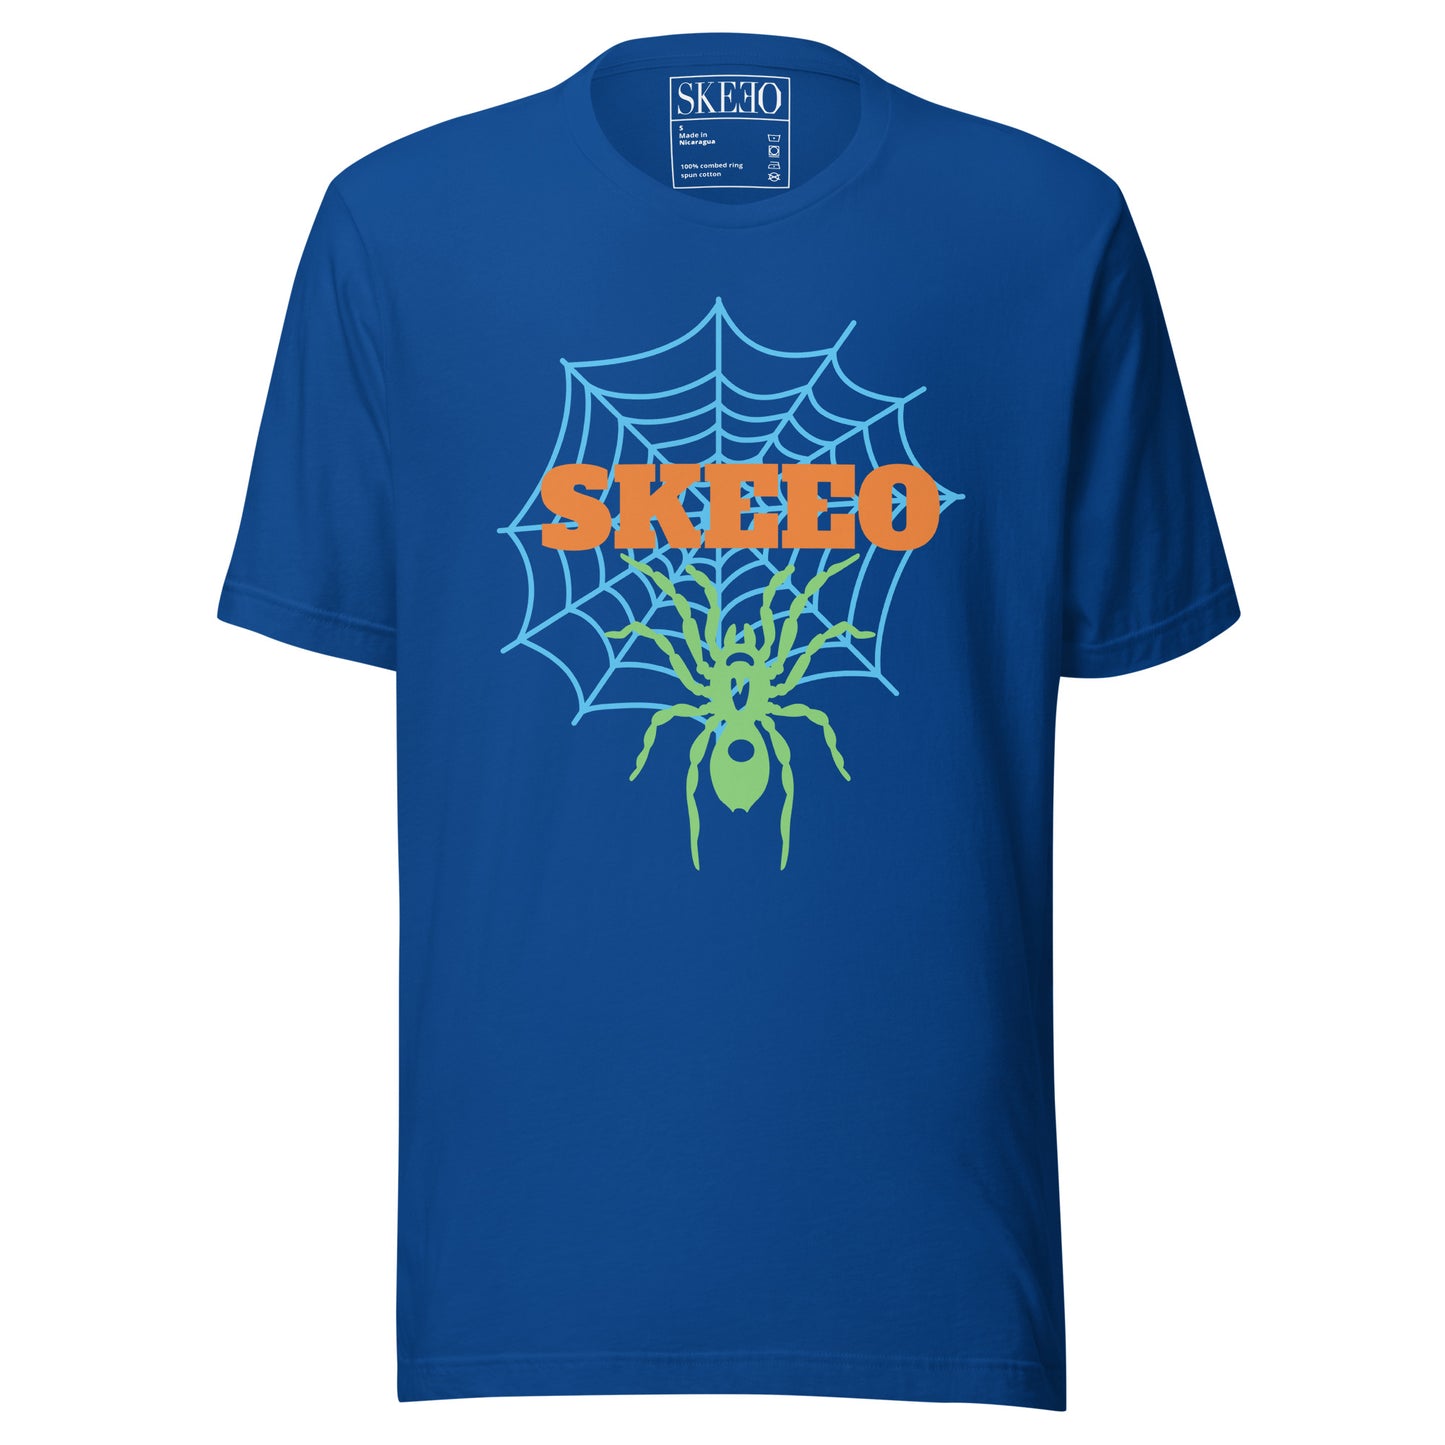 A SK Web t-shirt